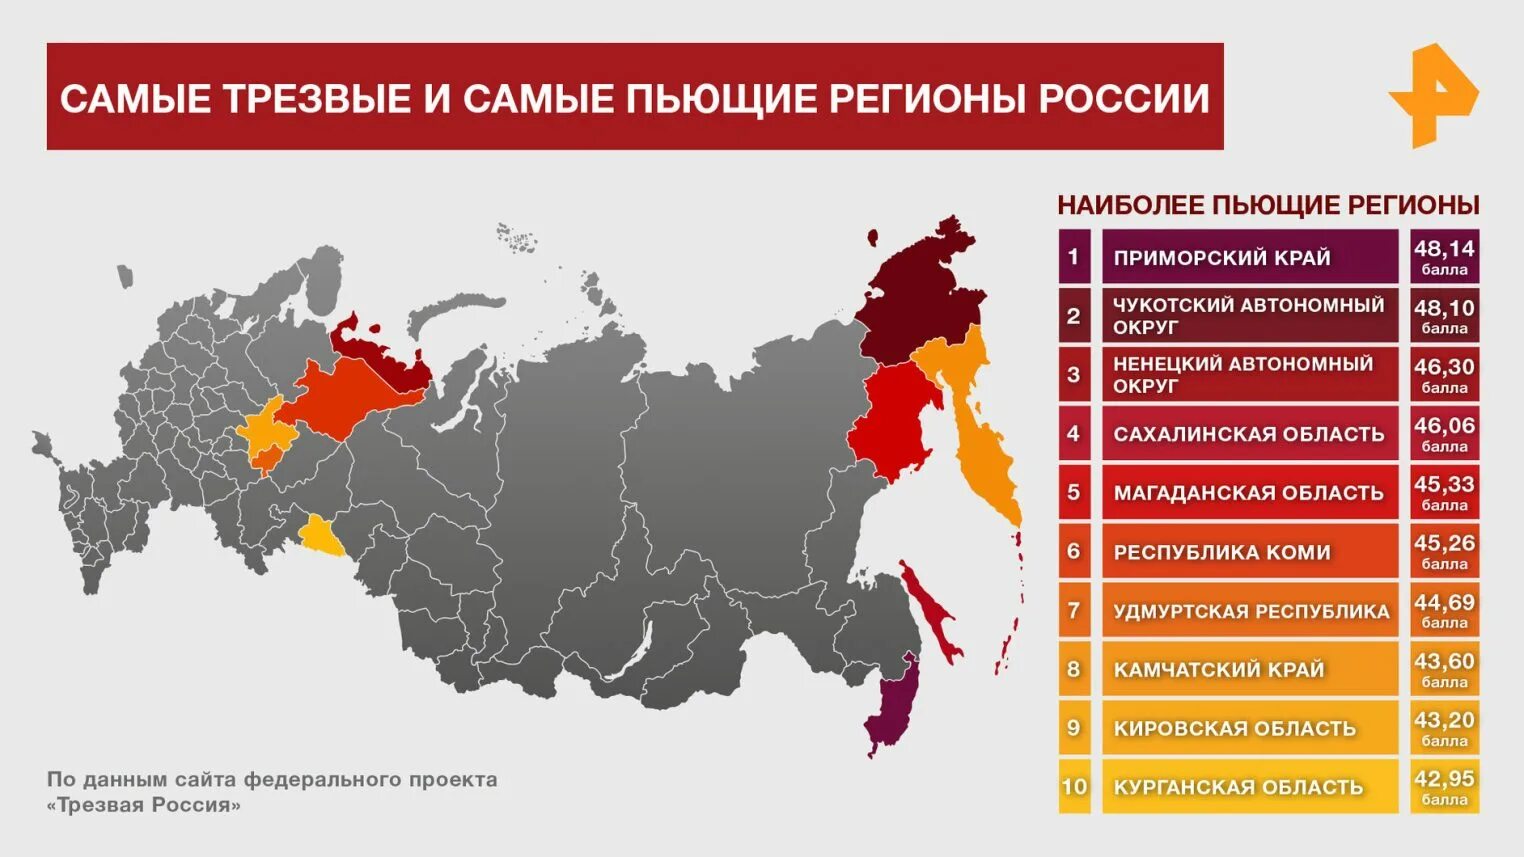 Самый пьющий регион России. Список пьющих регионов России. Самые пьющие регионы. Самые пьющие регионы России 2021.